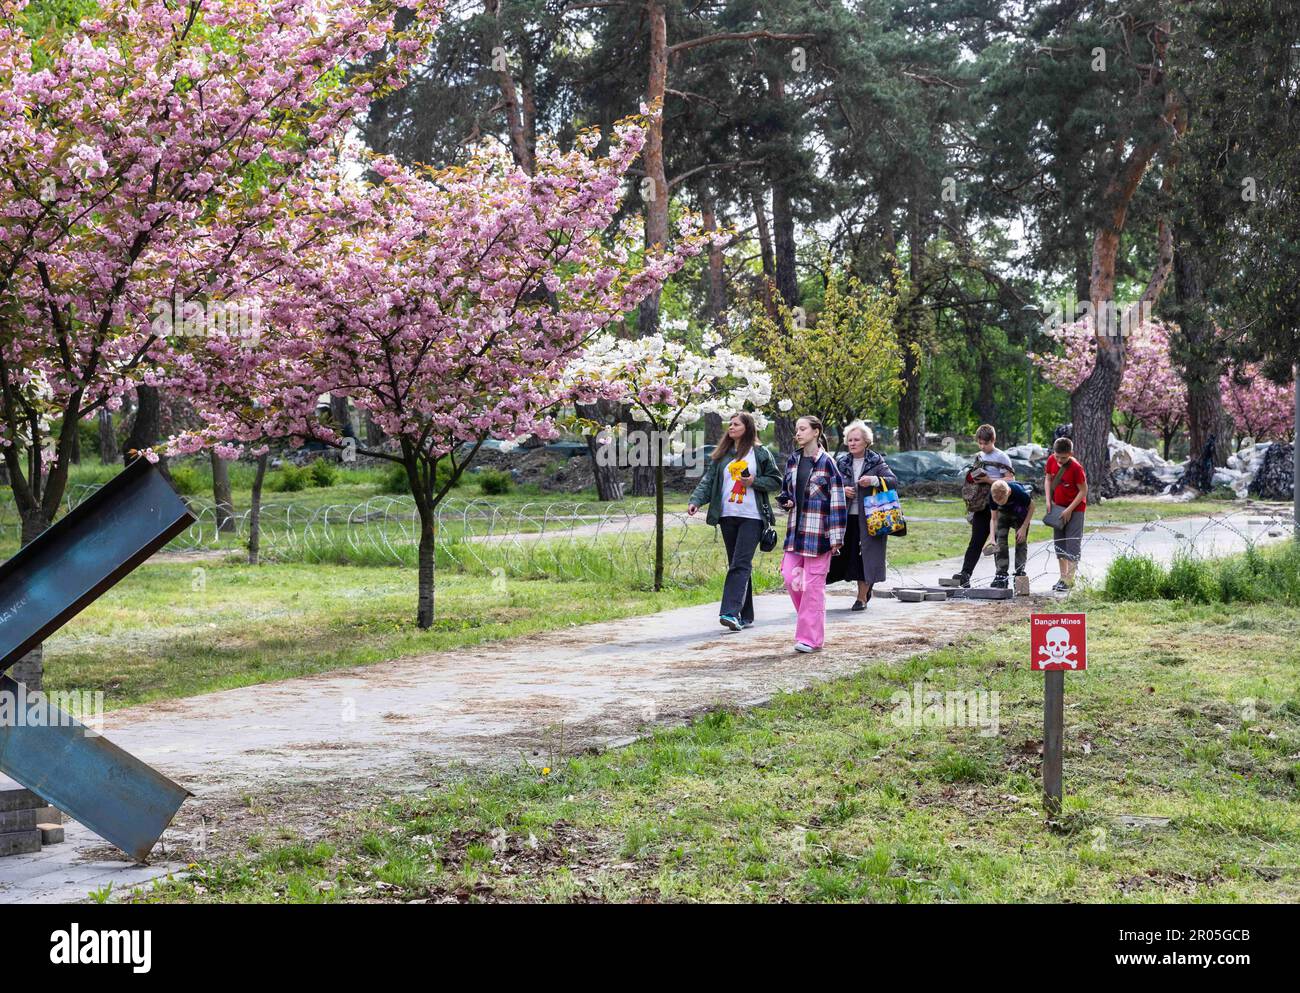 4 mai 2023, Kiev, Ukraine: Les visiteurs ont vu marcher le long de l'avenue du parc près des hérissons anti-chars, barbelés et un champ de mines. Sakura s'est épanouie dans le parc de Kyoto à Kiev. Kyoto Park à Kiev est une petite île japonaise au milieu de la capitale ukrainienne. C'est la plus longue allée de sakura en Ukraine, d'environ un kilomètre de long, a été plantée, les arbres Sakura ne fleurissent pas pendant longtemps - à peine deux semaines de la fin avril au début mai. Le parc de Kyoto était le site de la ligne de défense de Kiev et il y a de nombreuses fortifications. (Credit image: © Mykhaylo Palinchak/SOPA Images via ZUMA Press Wire) USAGE ÉDITORIAL SEULEMENT! Pas pour Banque D'Images